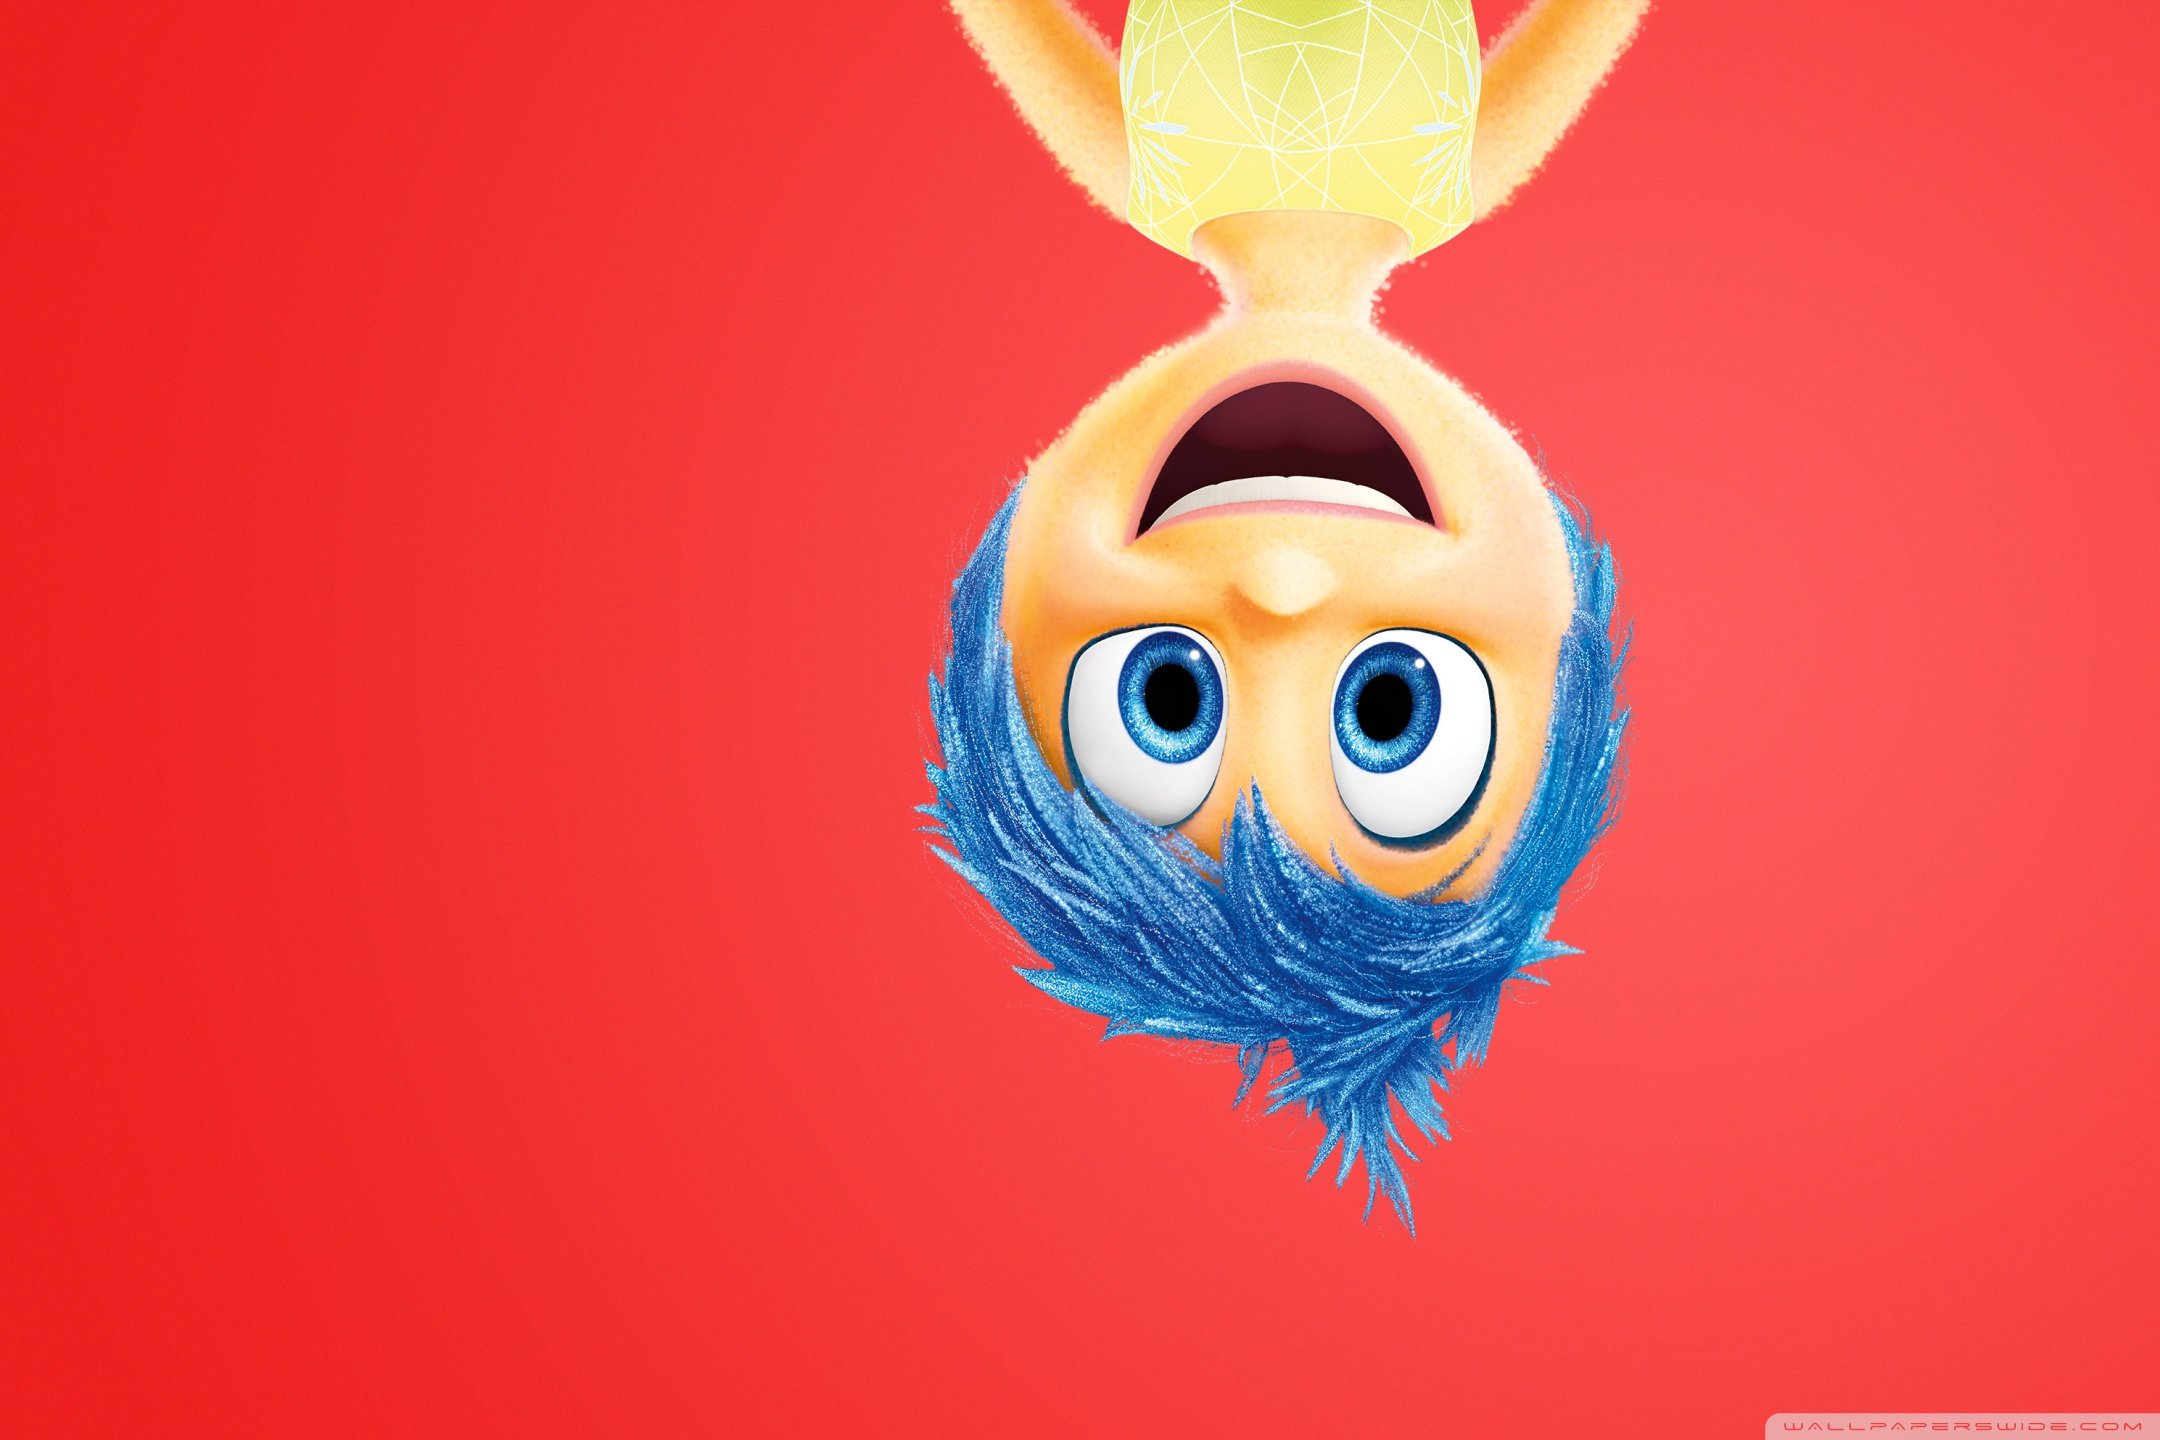 Inside Out 2015 Joy, Pixar